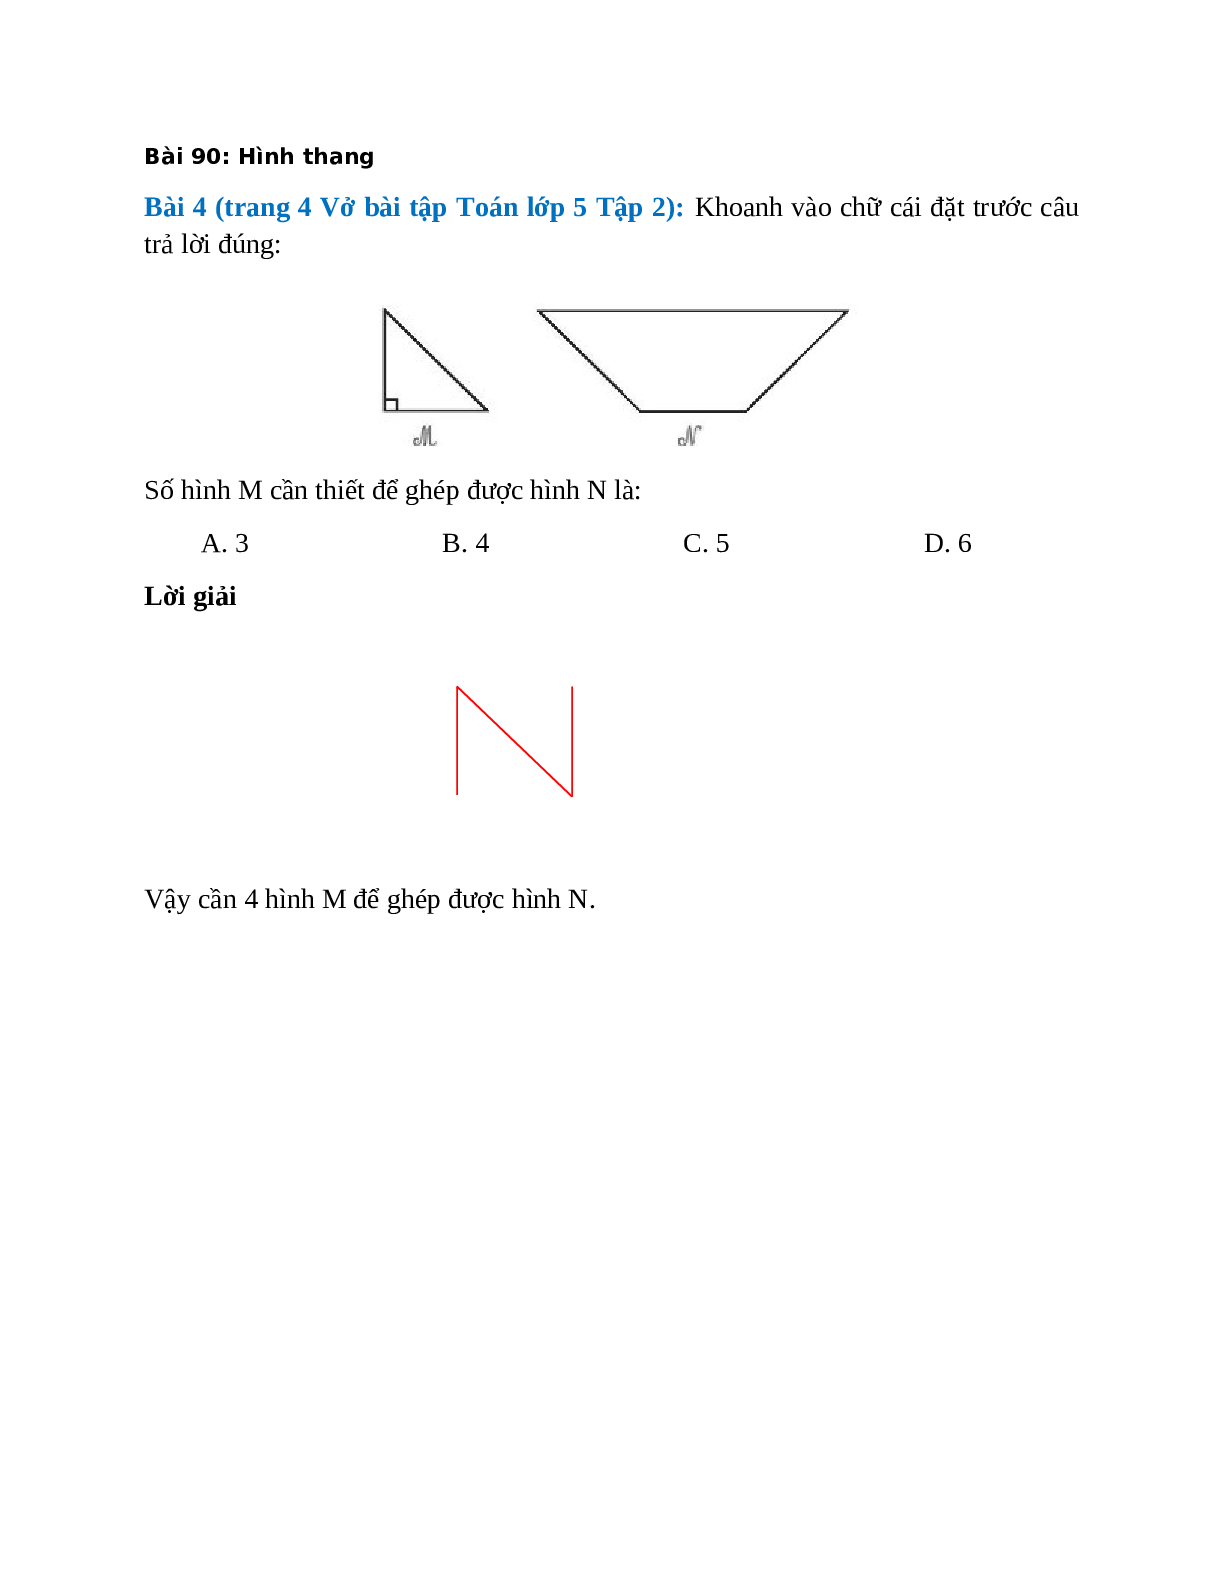 Số hình M cần thiết để ghép được hình N là: A. 3, B. 4  (trang 1)